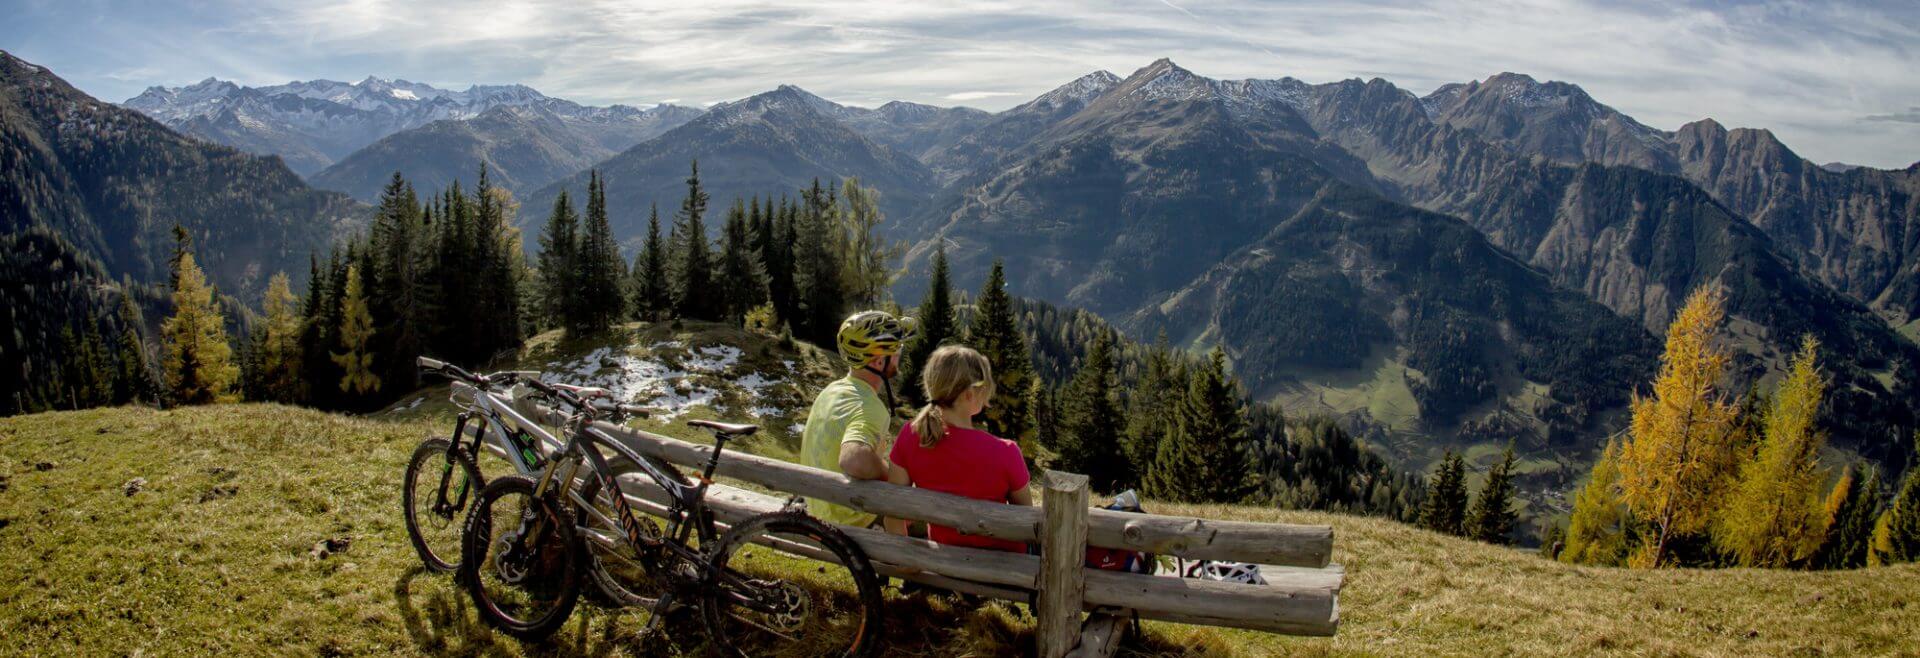 Mountainbiker machen Rast auf einer Bank mit Blick ins Tal